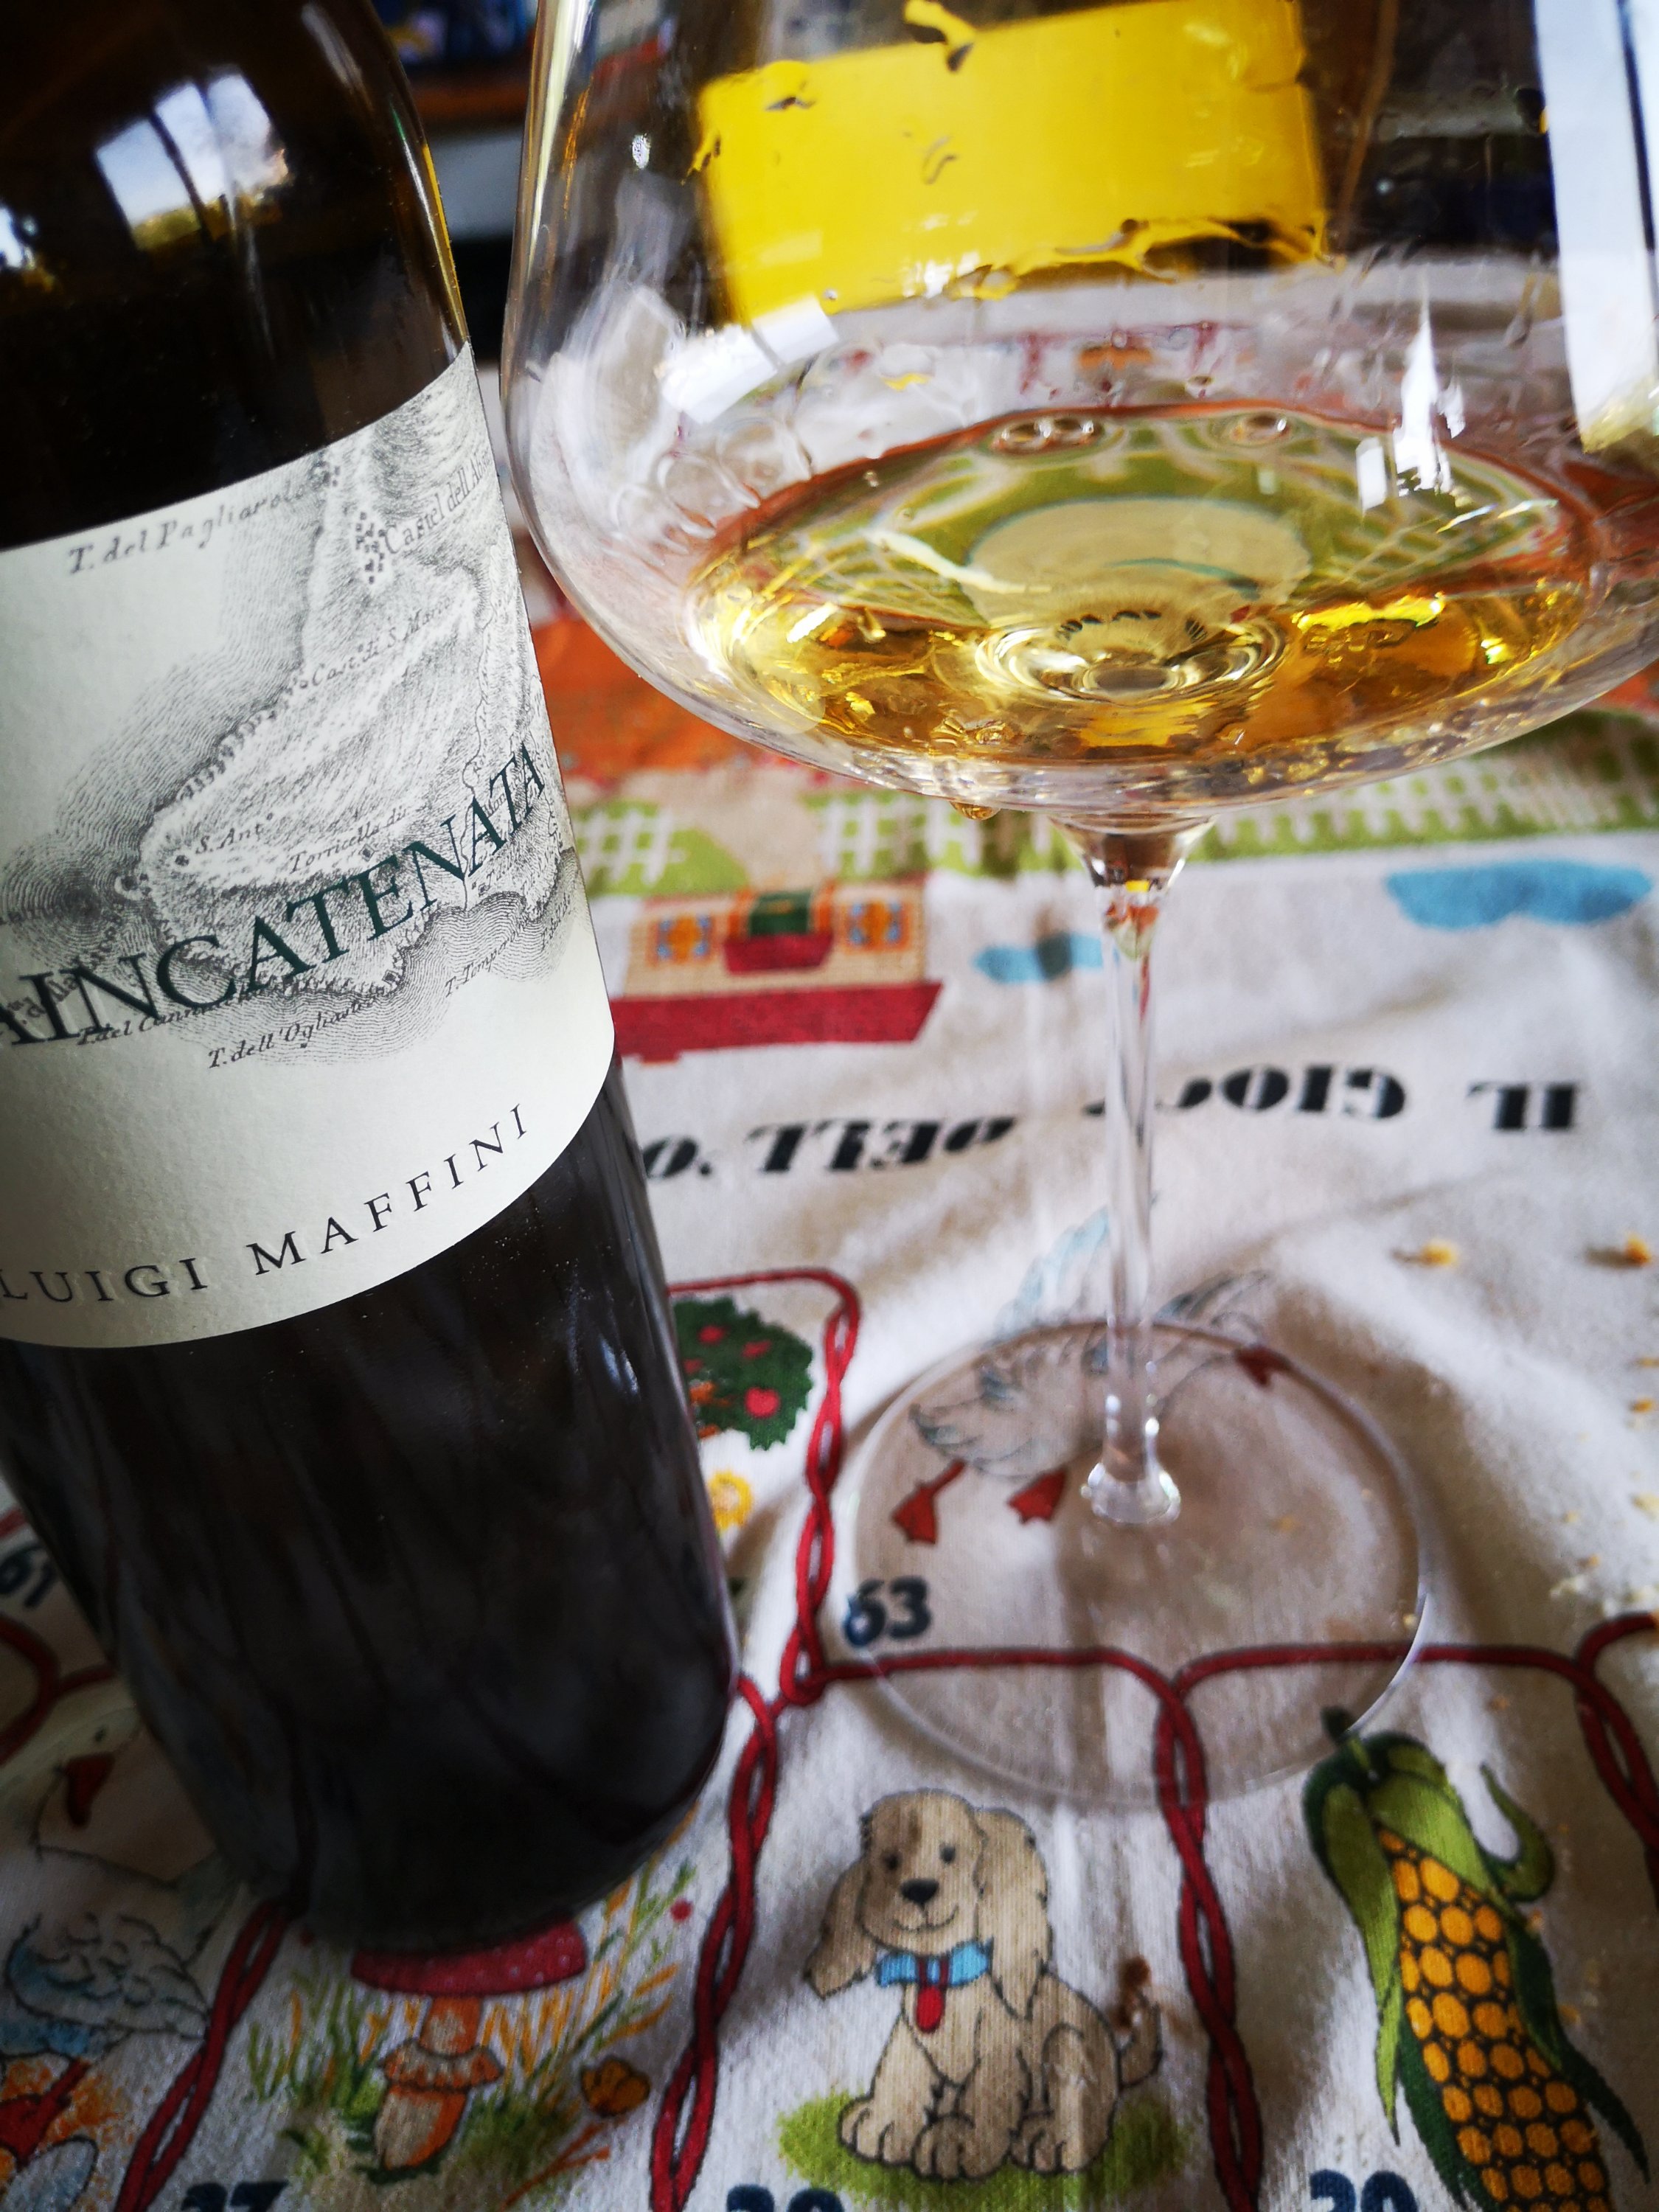 Enonauta/Degustazione di Vino #168 - Pietraincatenata 2016 - Luigi Maffini | "Ricordati di prendere più spesso in considerazione il Fiano"